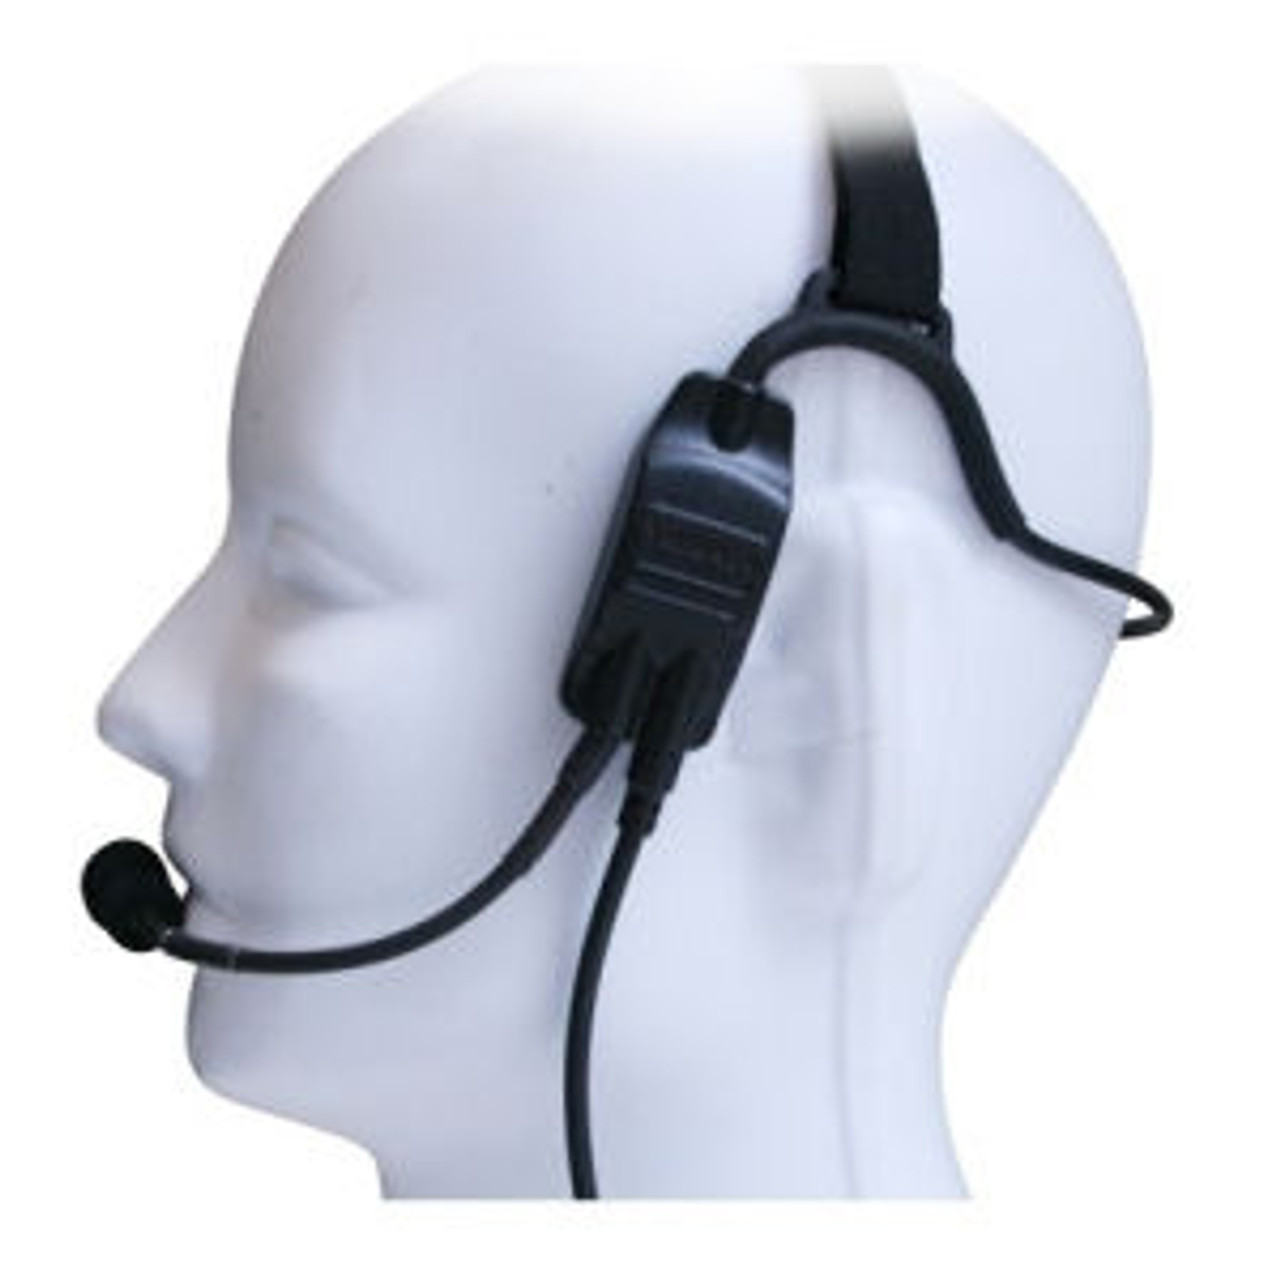 Kenwood TK-2300 Temple Transducer Headset